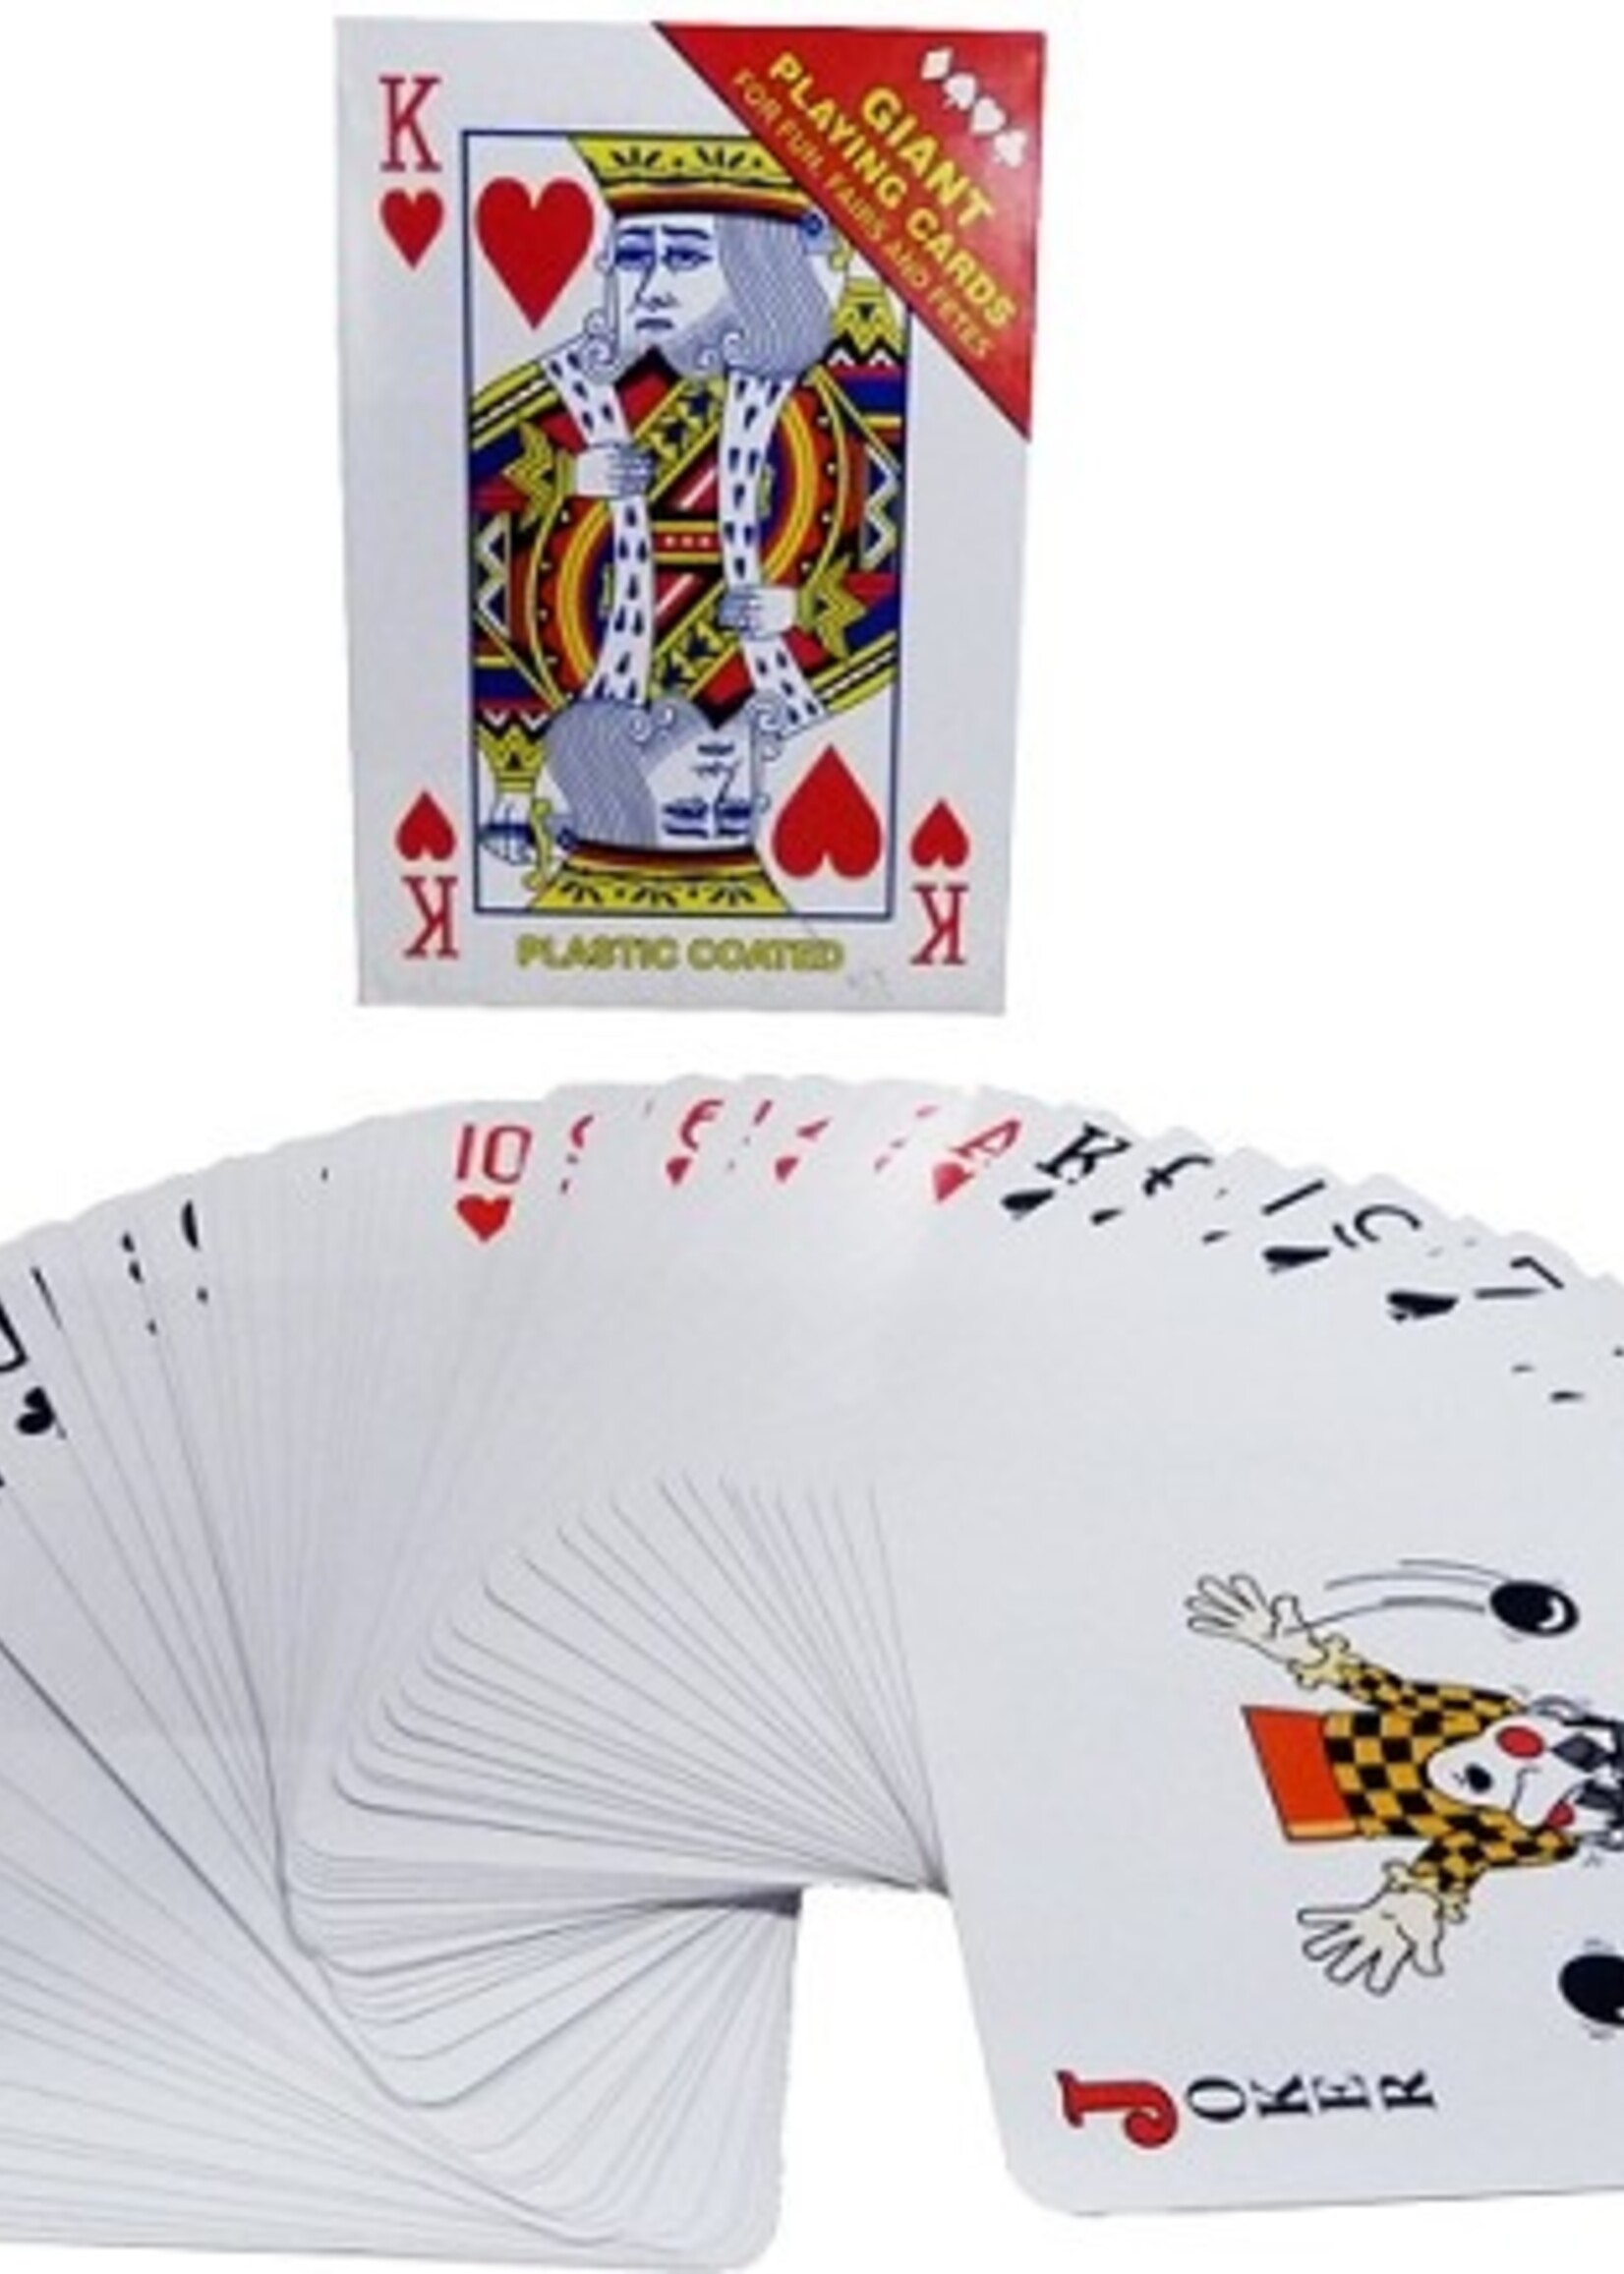 Reuzespeelkaarten Giant plastic coated 12x17cm. 52 kaarten plus jokers.